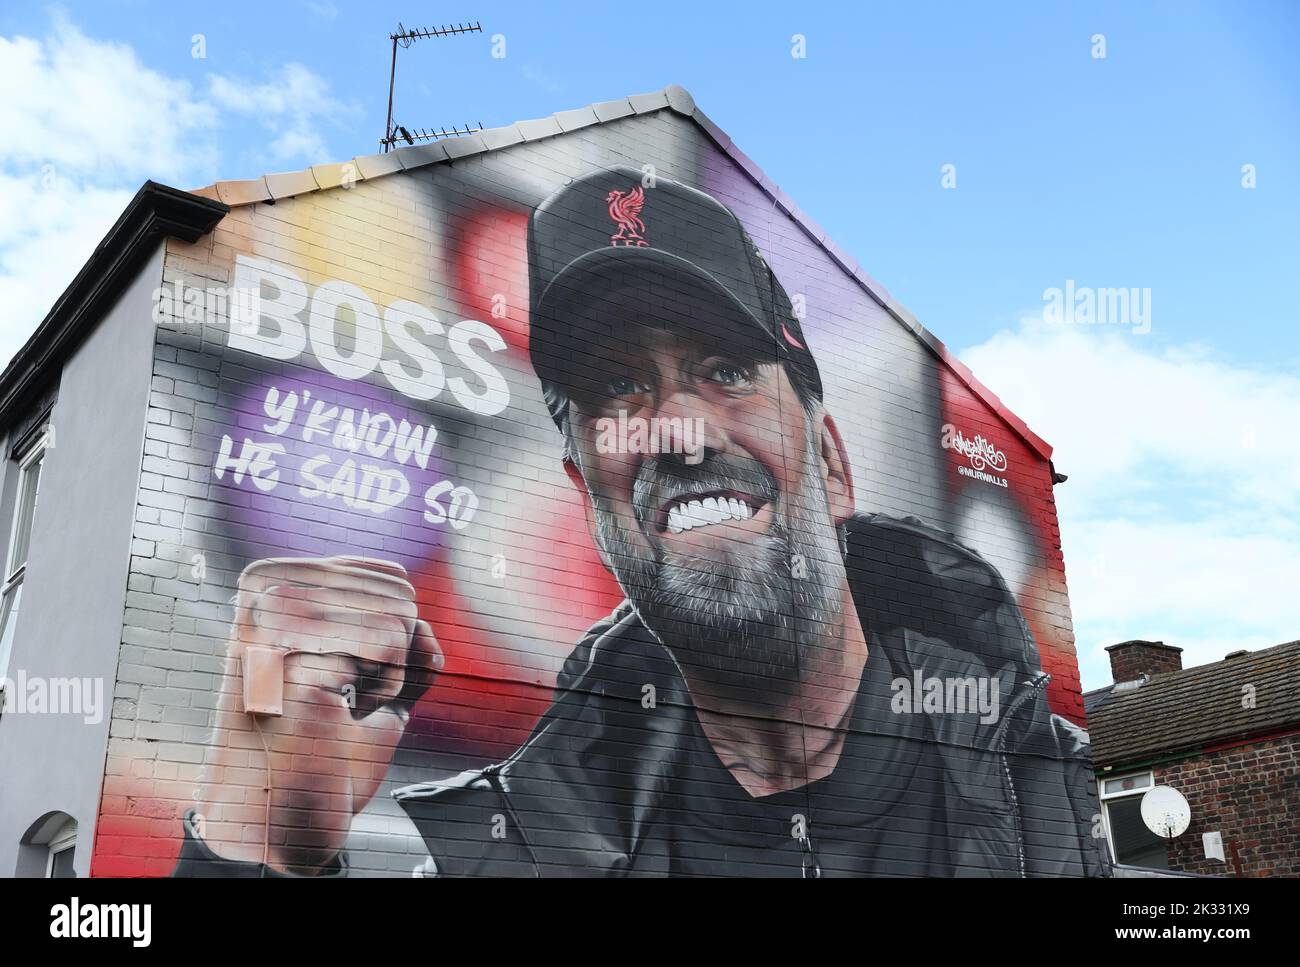 Ein Wandgemälde des Liverpooler Managers Jurgen Klopp vor dem Stadion vor dem Legends-Spiel in Anfield, Liverpool. Bilddatum: Samstag, 24. September 2022. Stockfoto